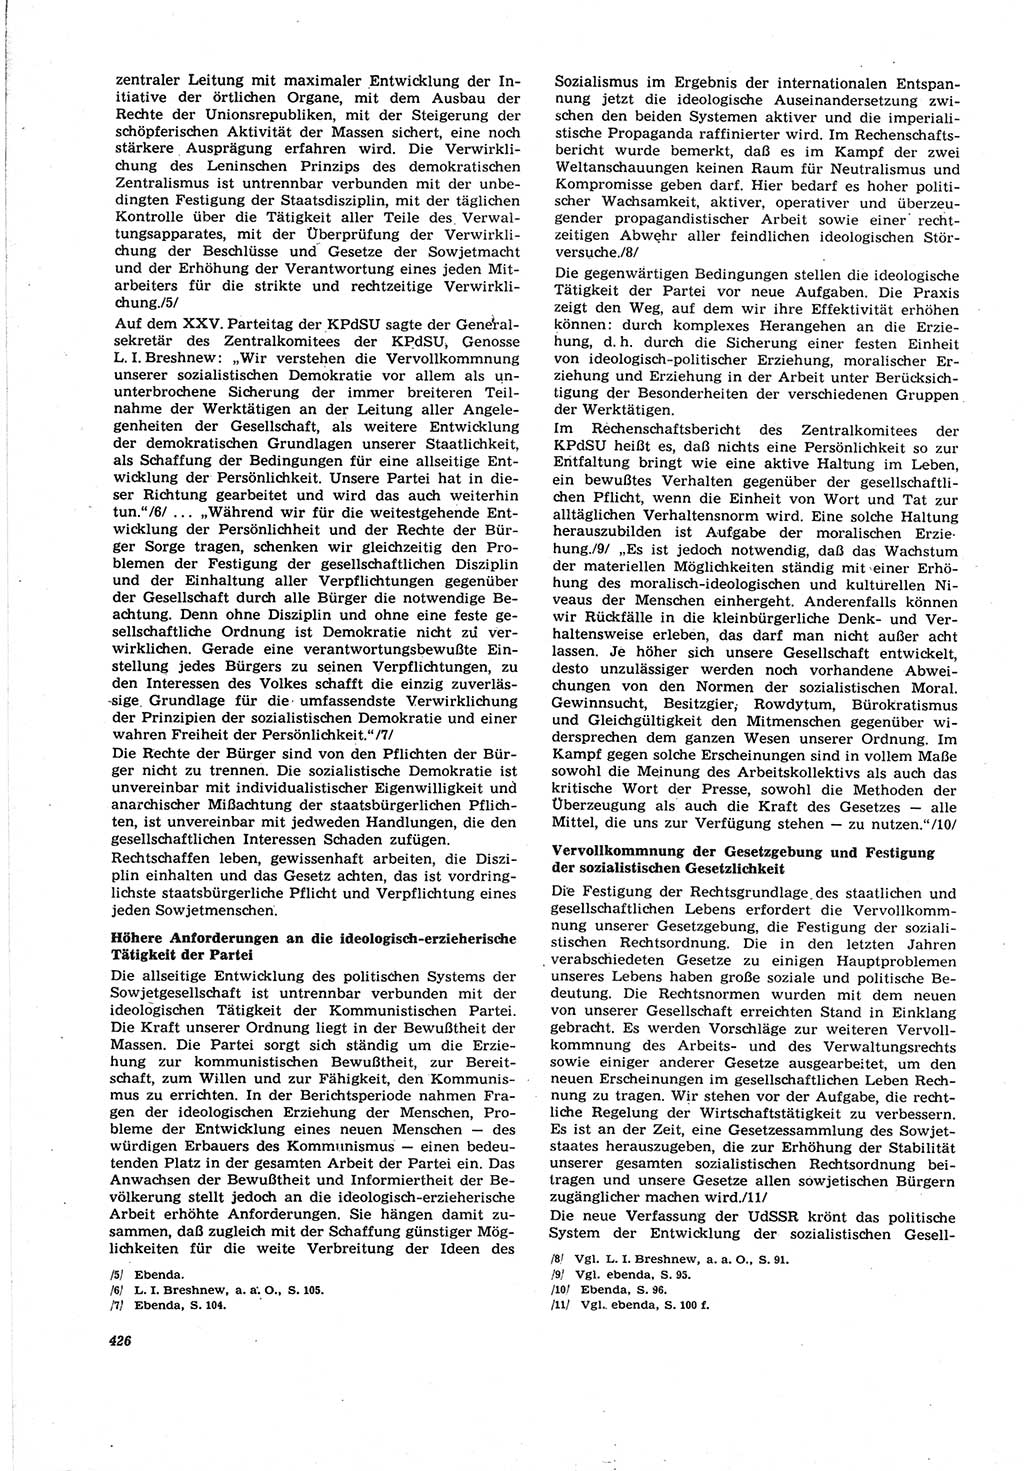 Neue Justiz (NJ), Zeitschrift für Recht und Rechtswissenschaft [Deutsche Demokratische Republik (DDR)], 30. Jahrgang 1976, Seite 426 (NJ DDR 1976, S. 426)